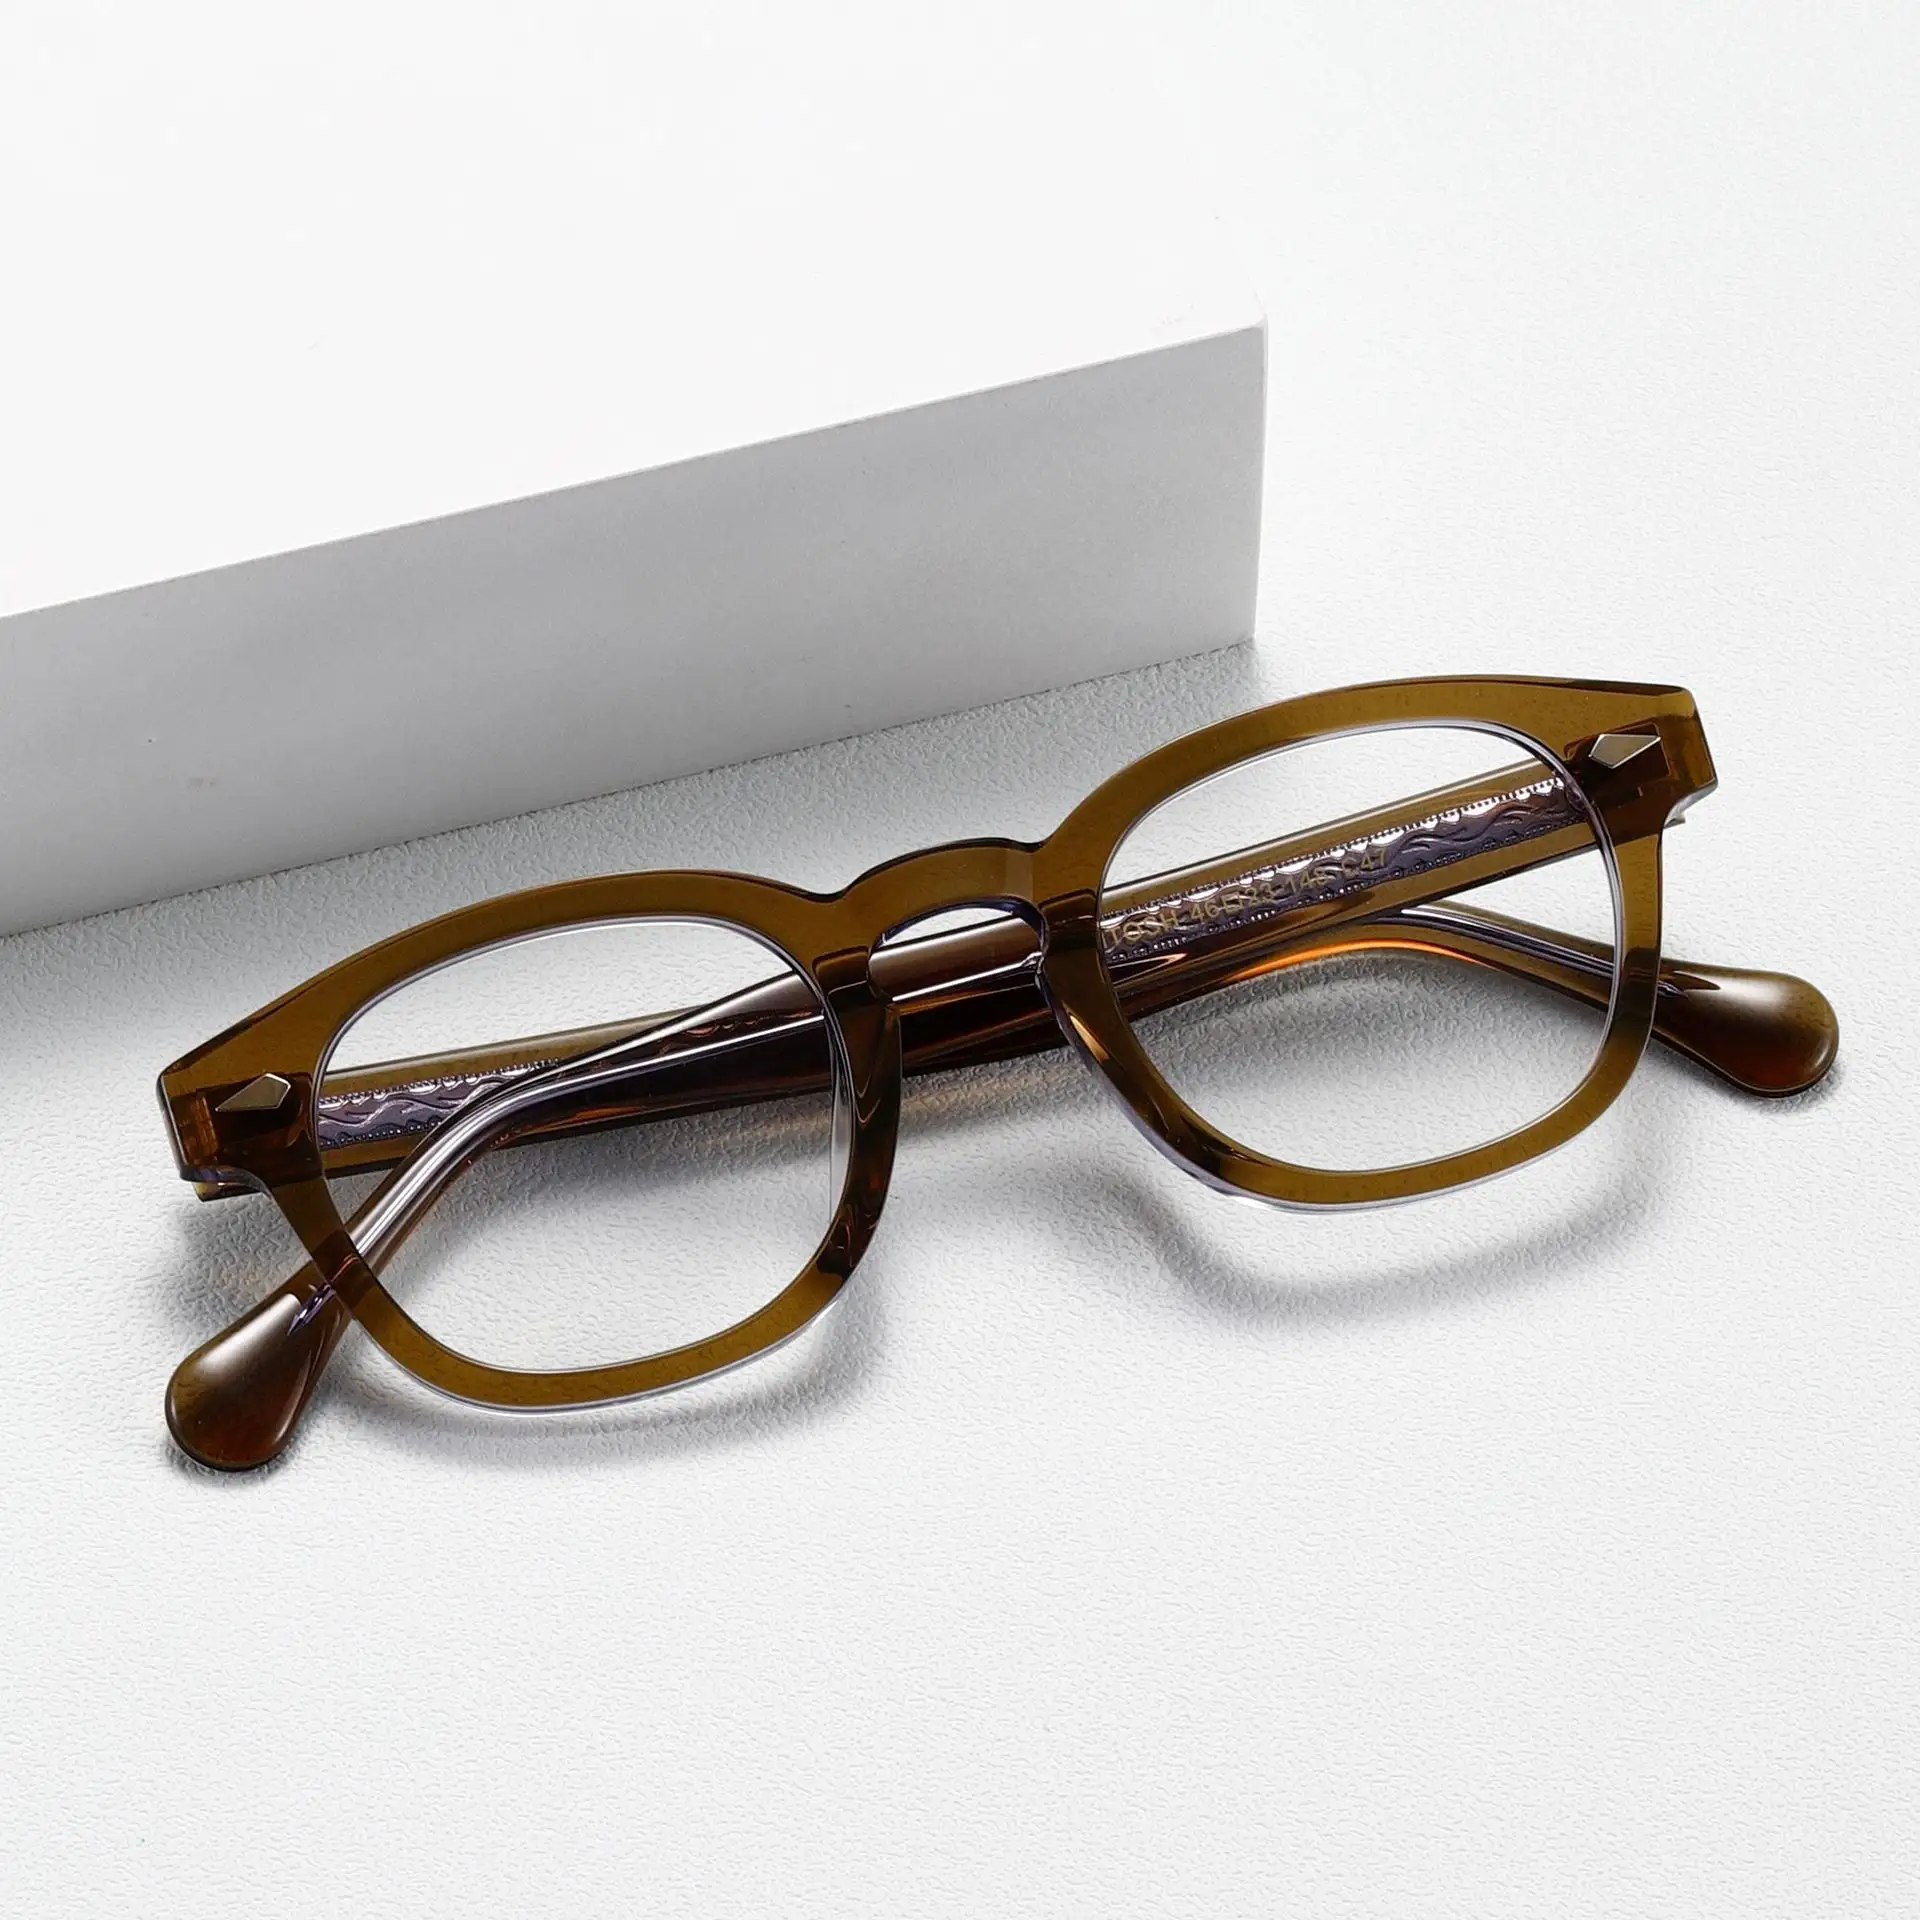 Sıcak satış lüks yüksek kalite el yapımı asetat okuma gözlüğü çerçeveleri titanyum miyopi optik gözlük çerçeve erkekler ve kadınlar için